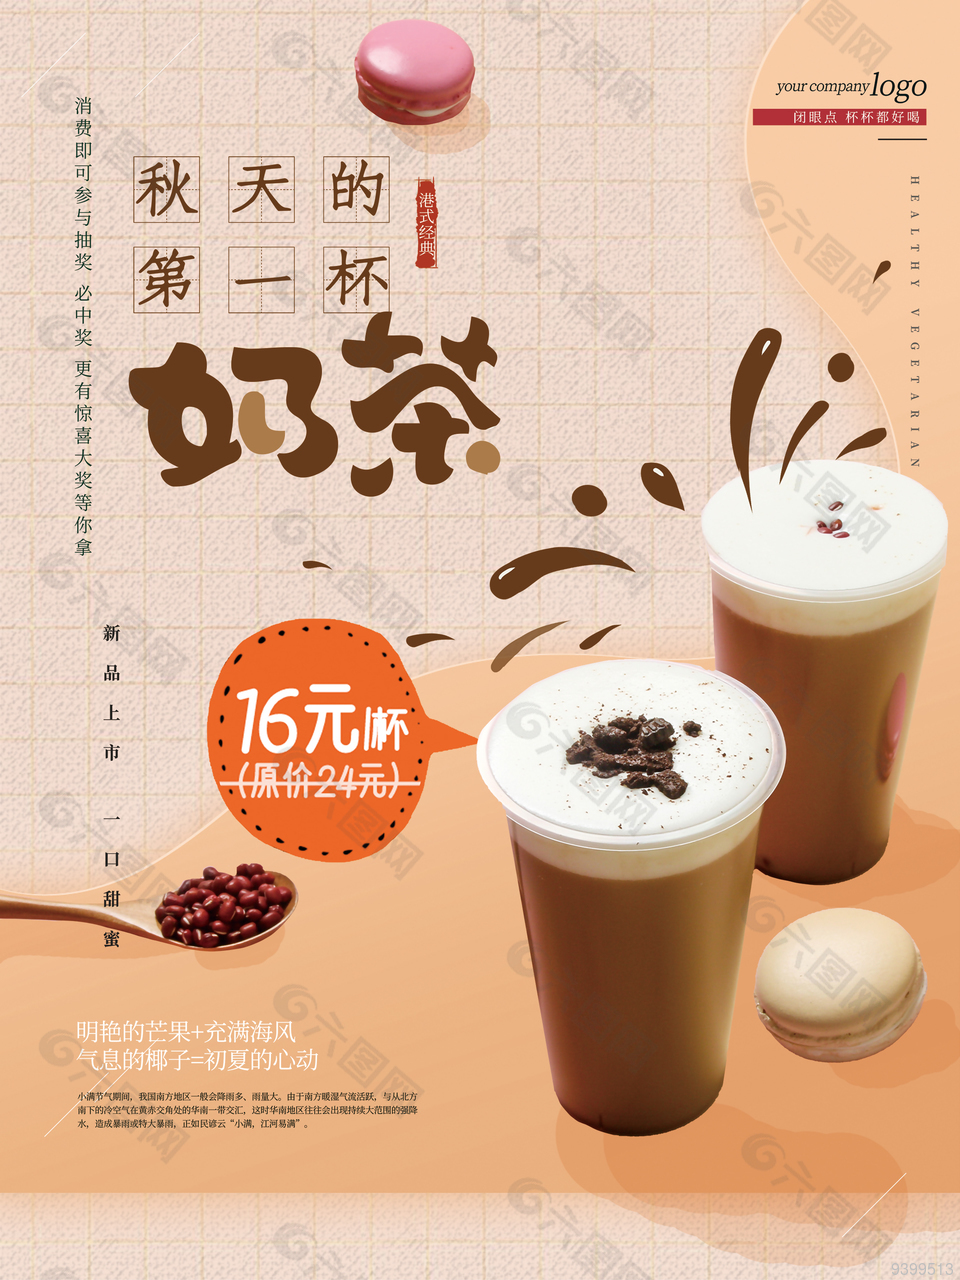 暖心创意奶茶店宣传海报